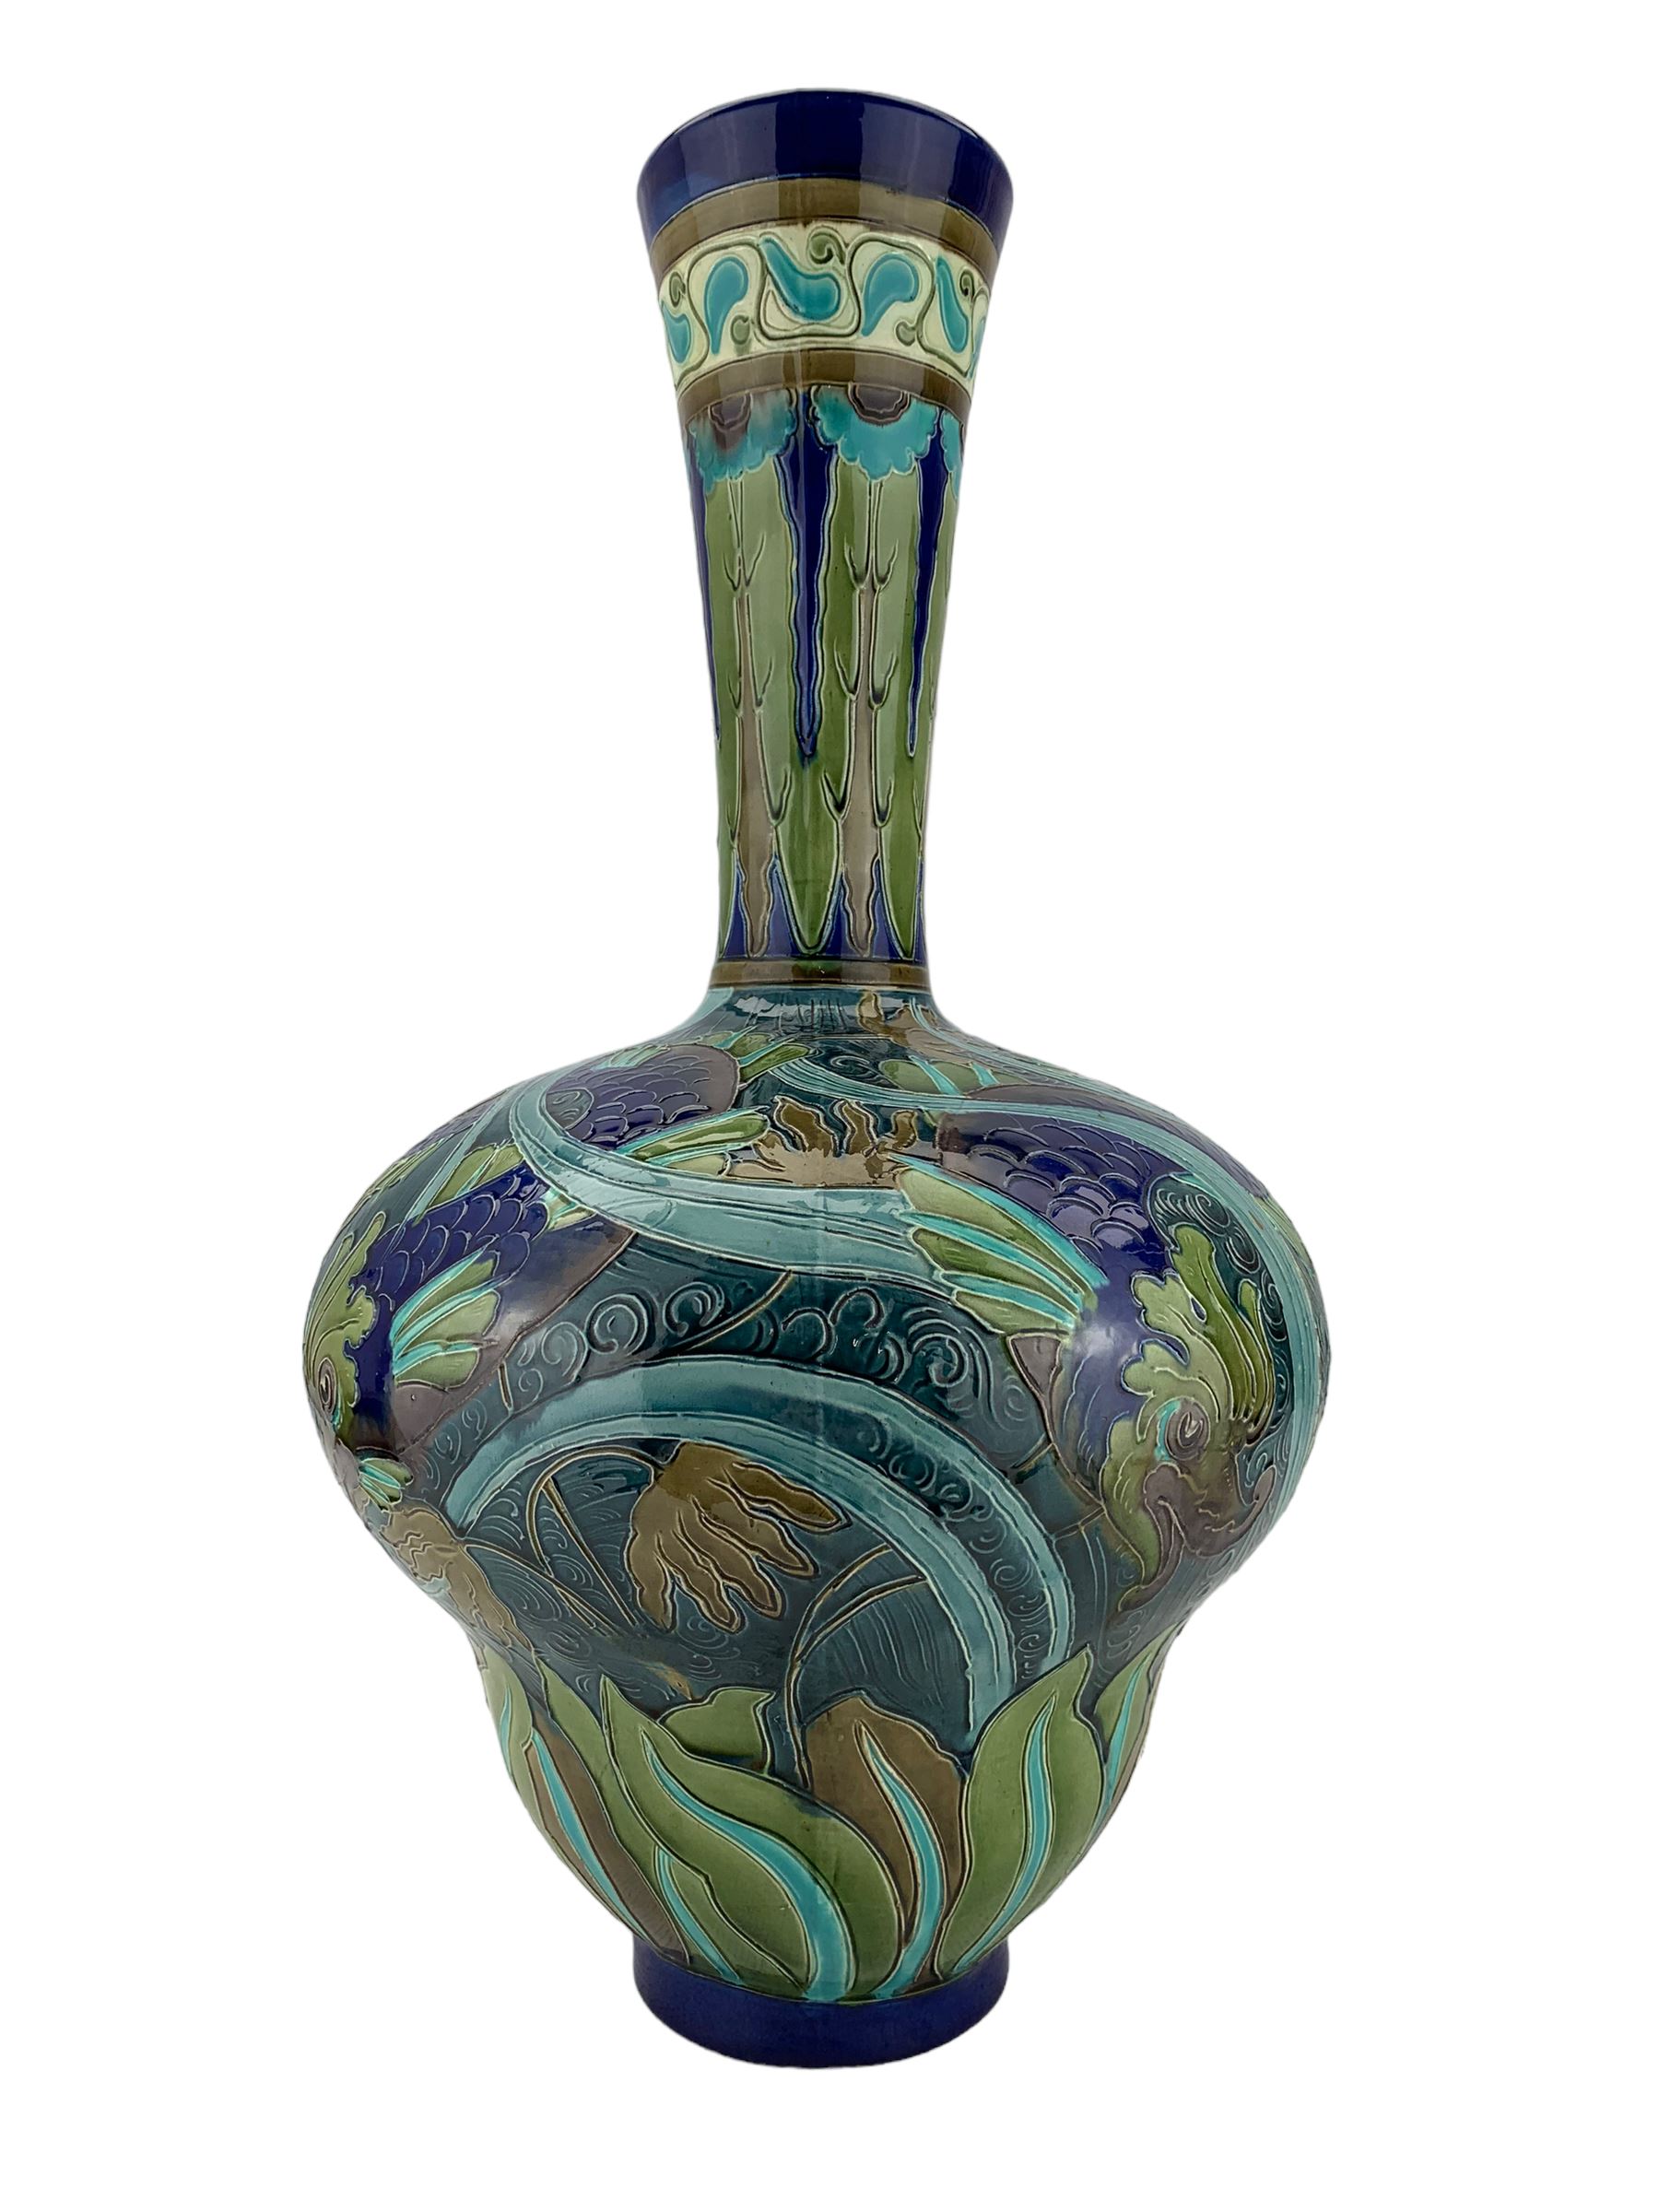 Large Burmantofts Faience partie-colour vase - Image 2 of 6